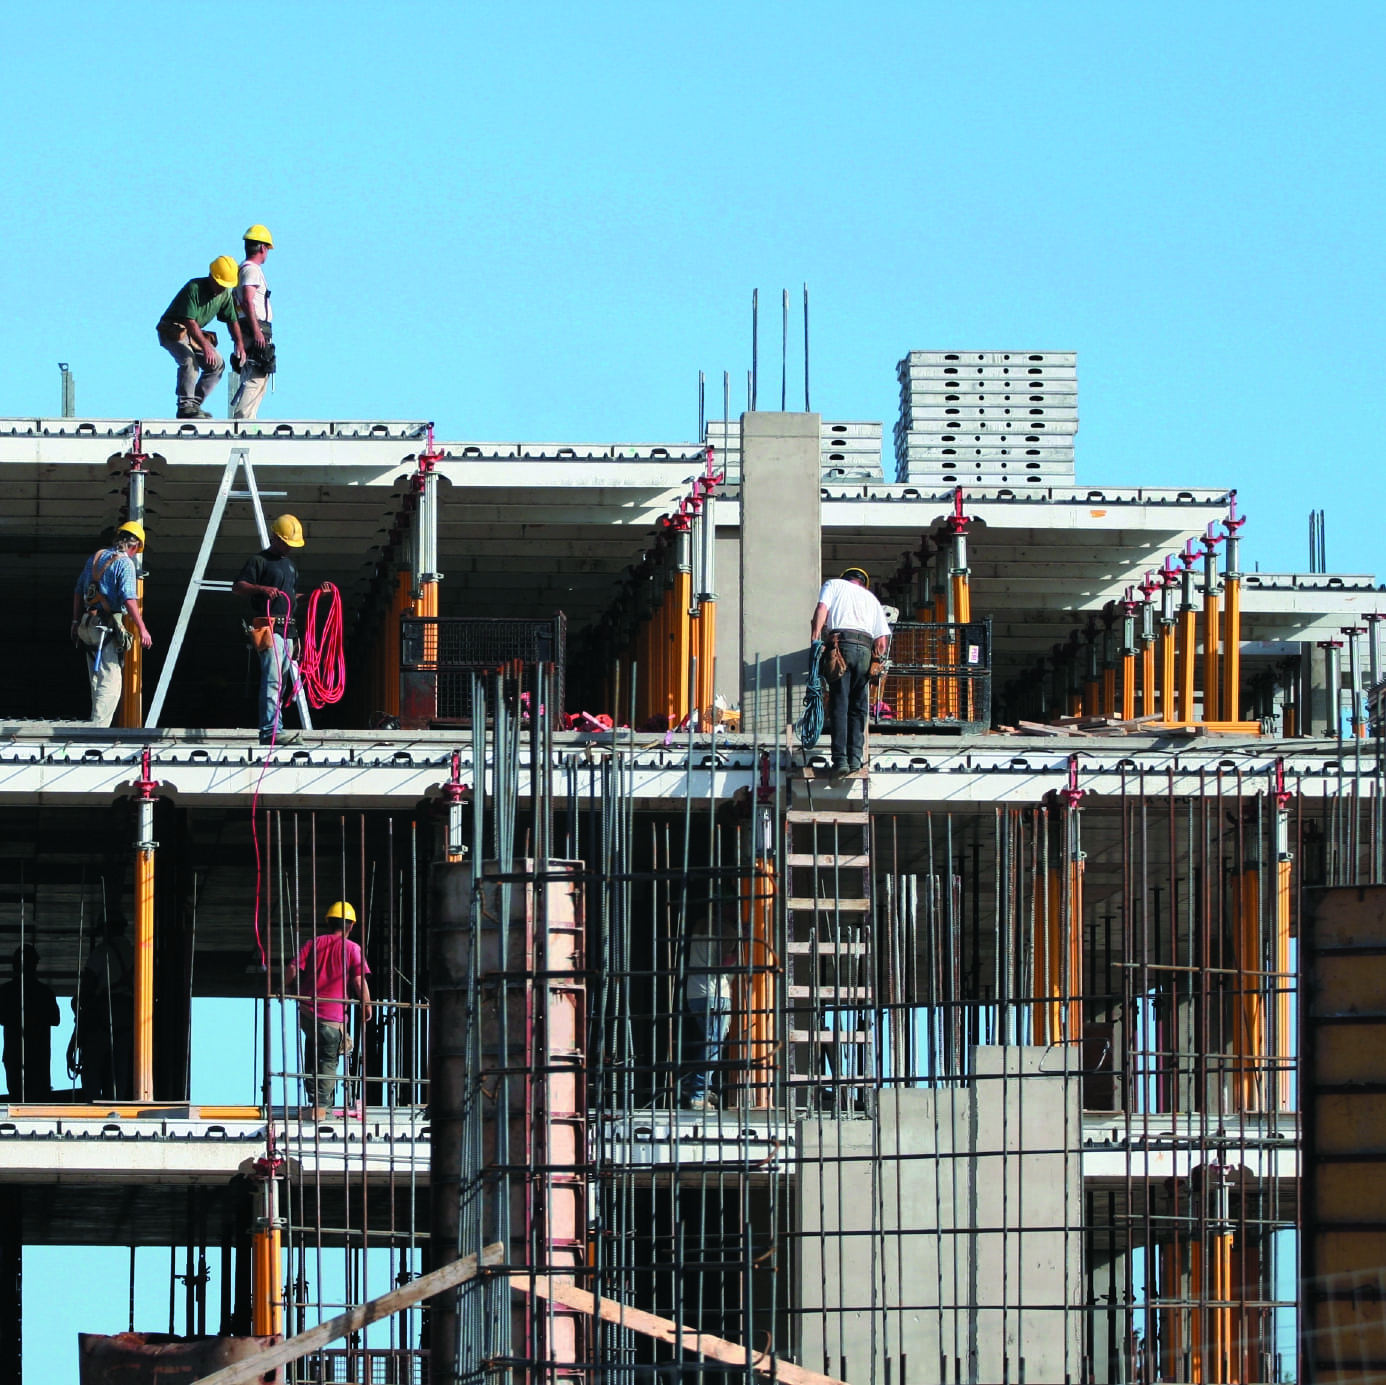 builders risk insurance